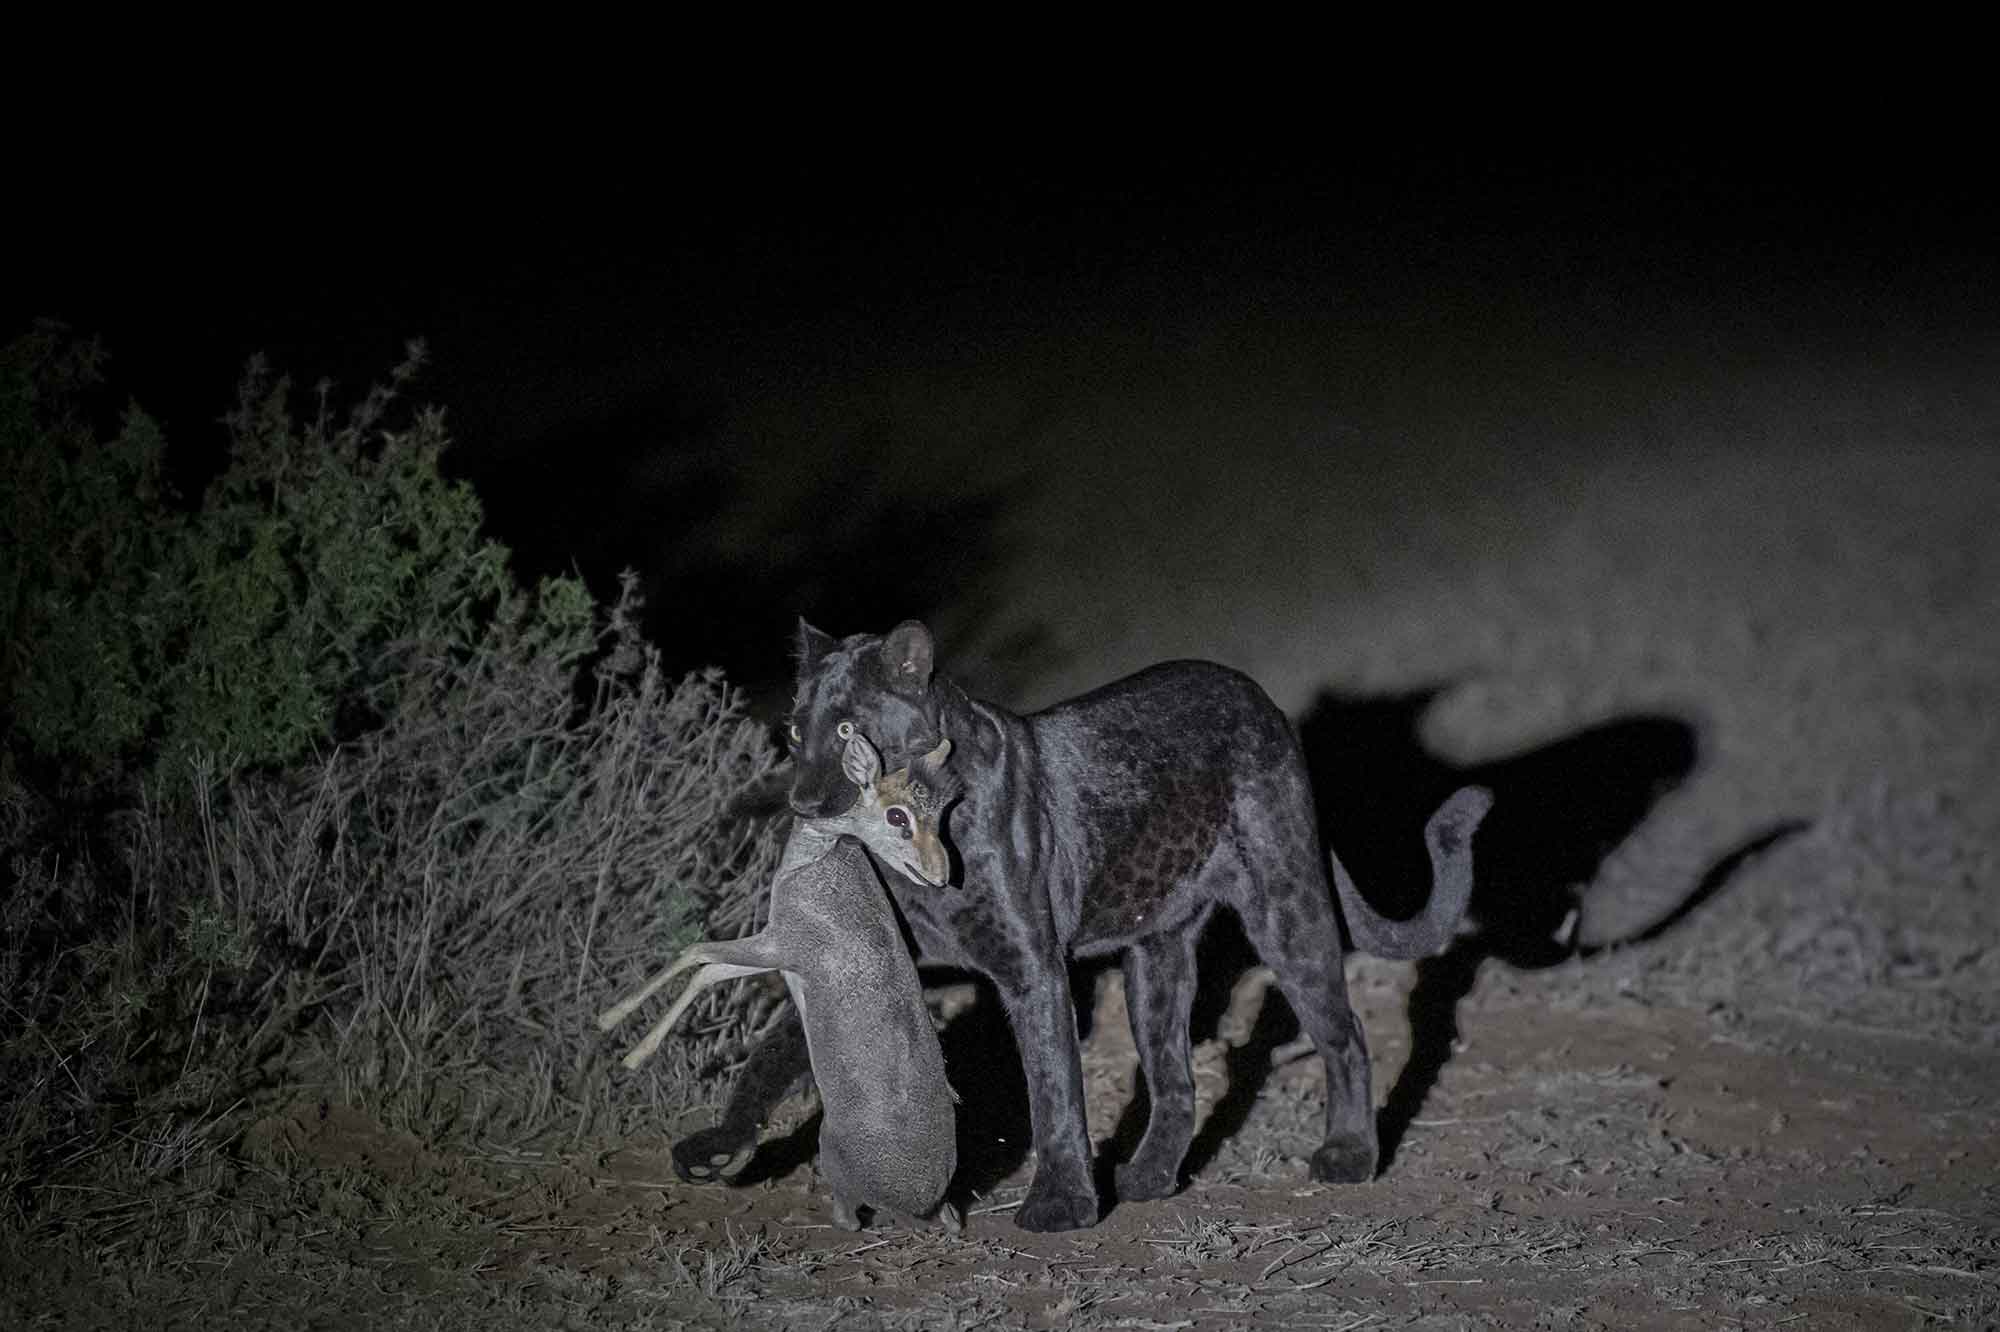 Une rare panthère noire sauvage photographiée dans la nuit kényane